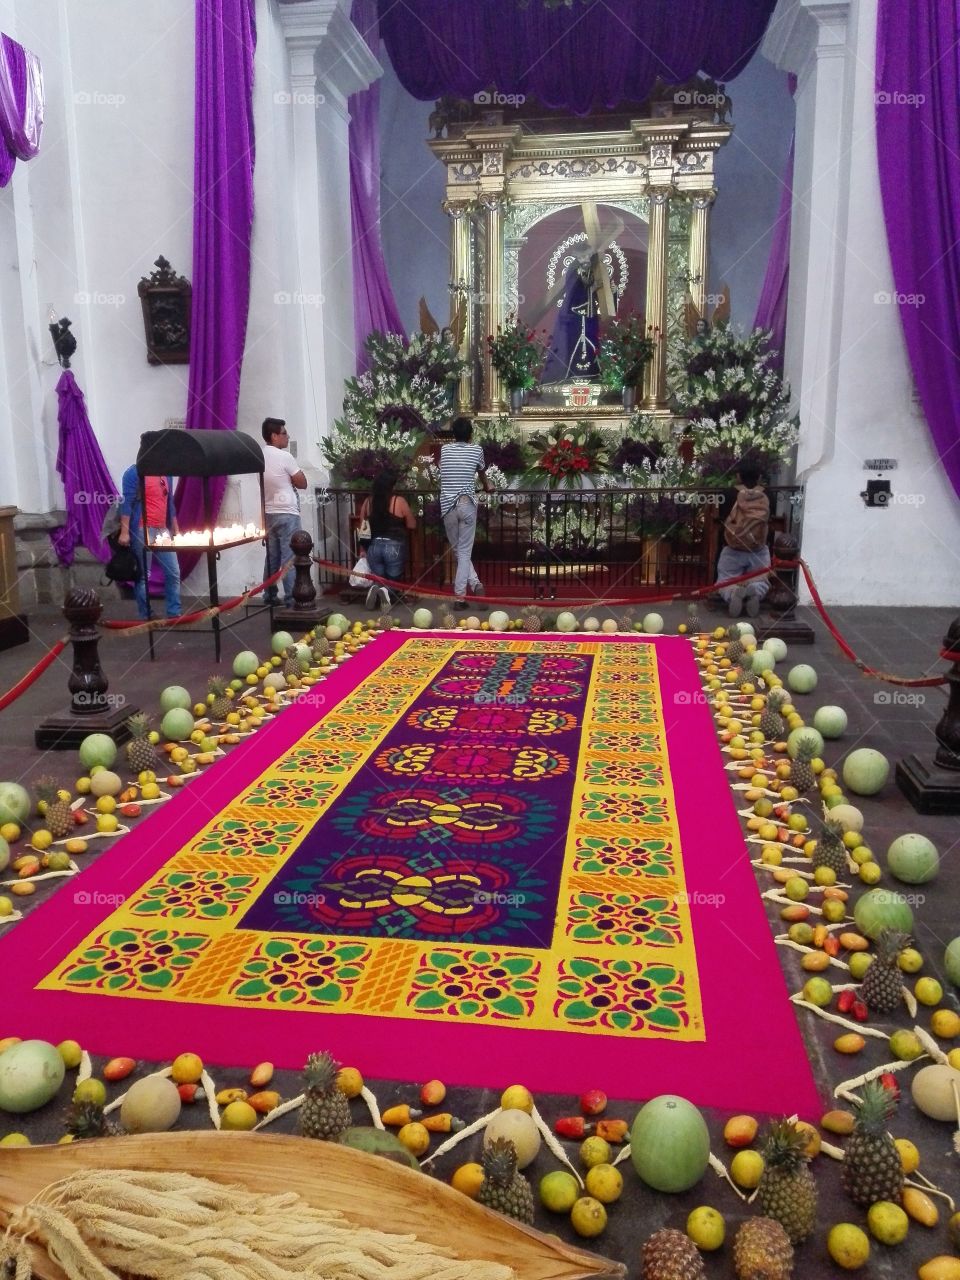 Antigua's carpet. Inside a church in Antigua Guatemala